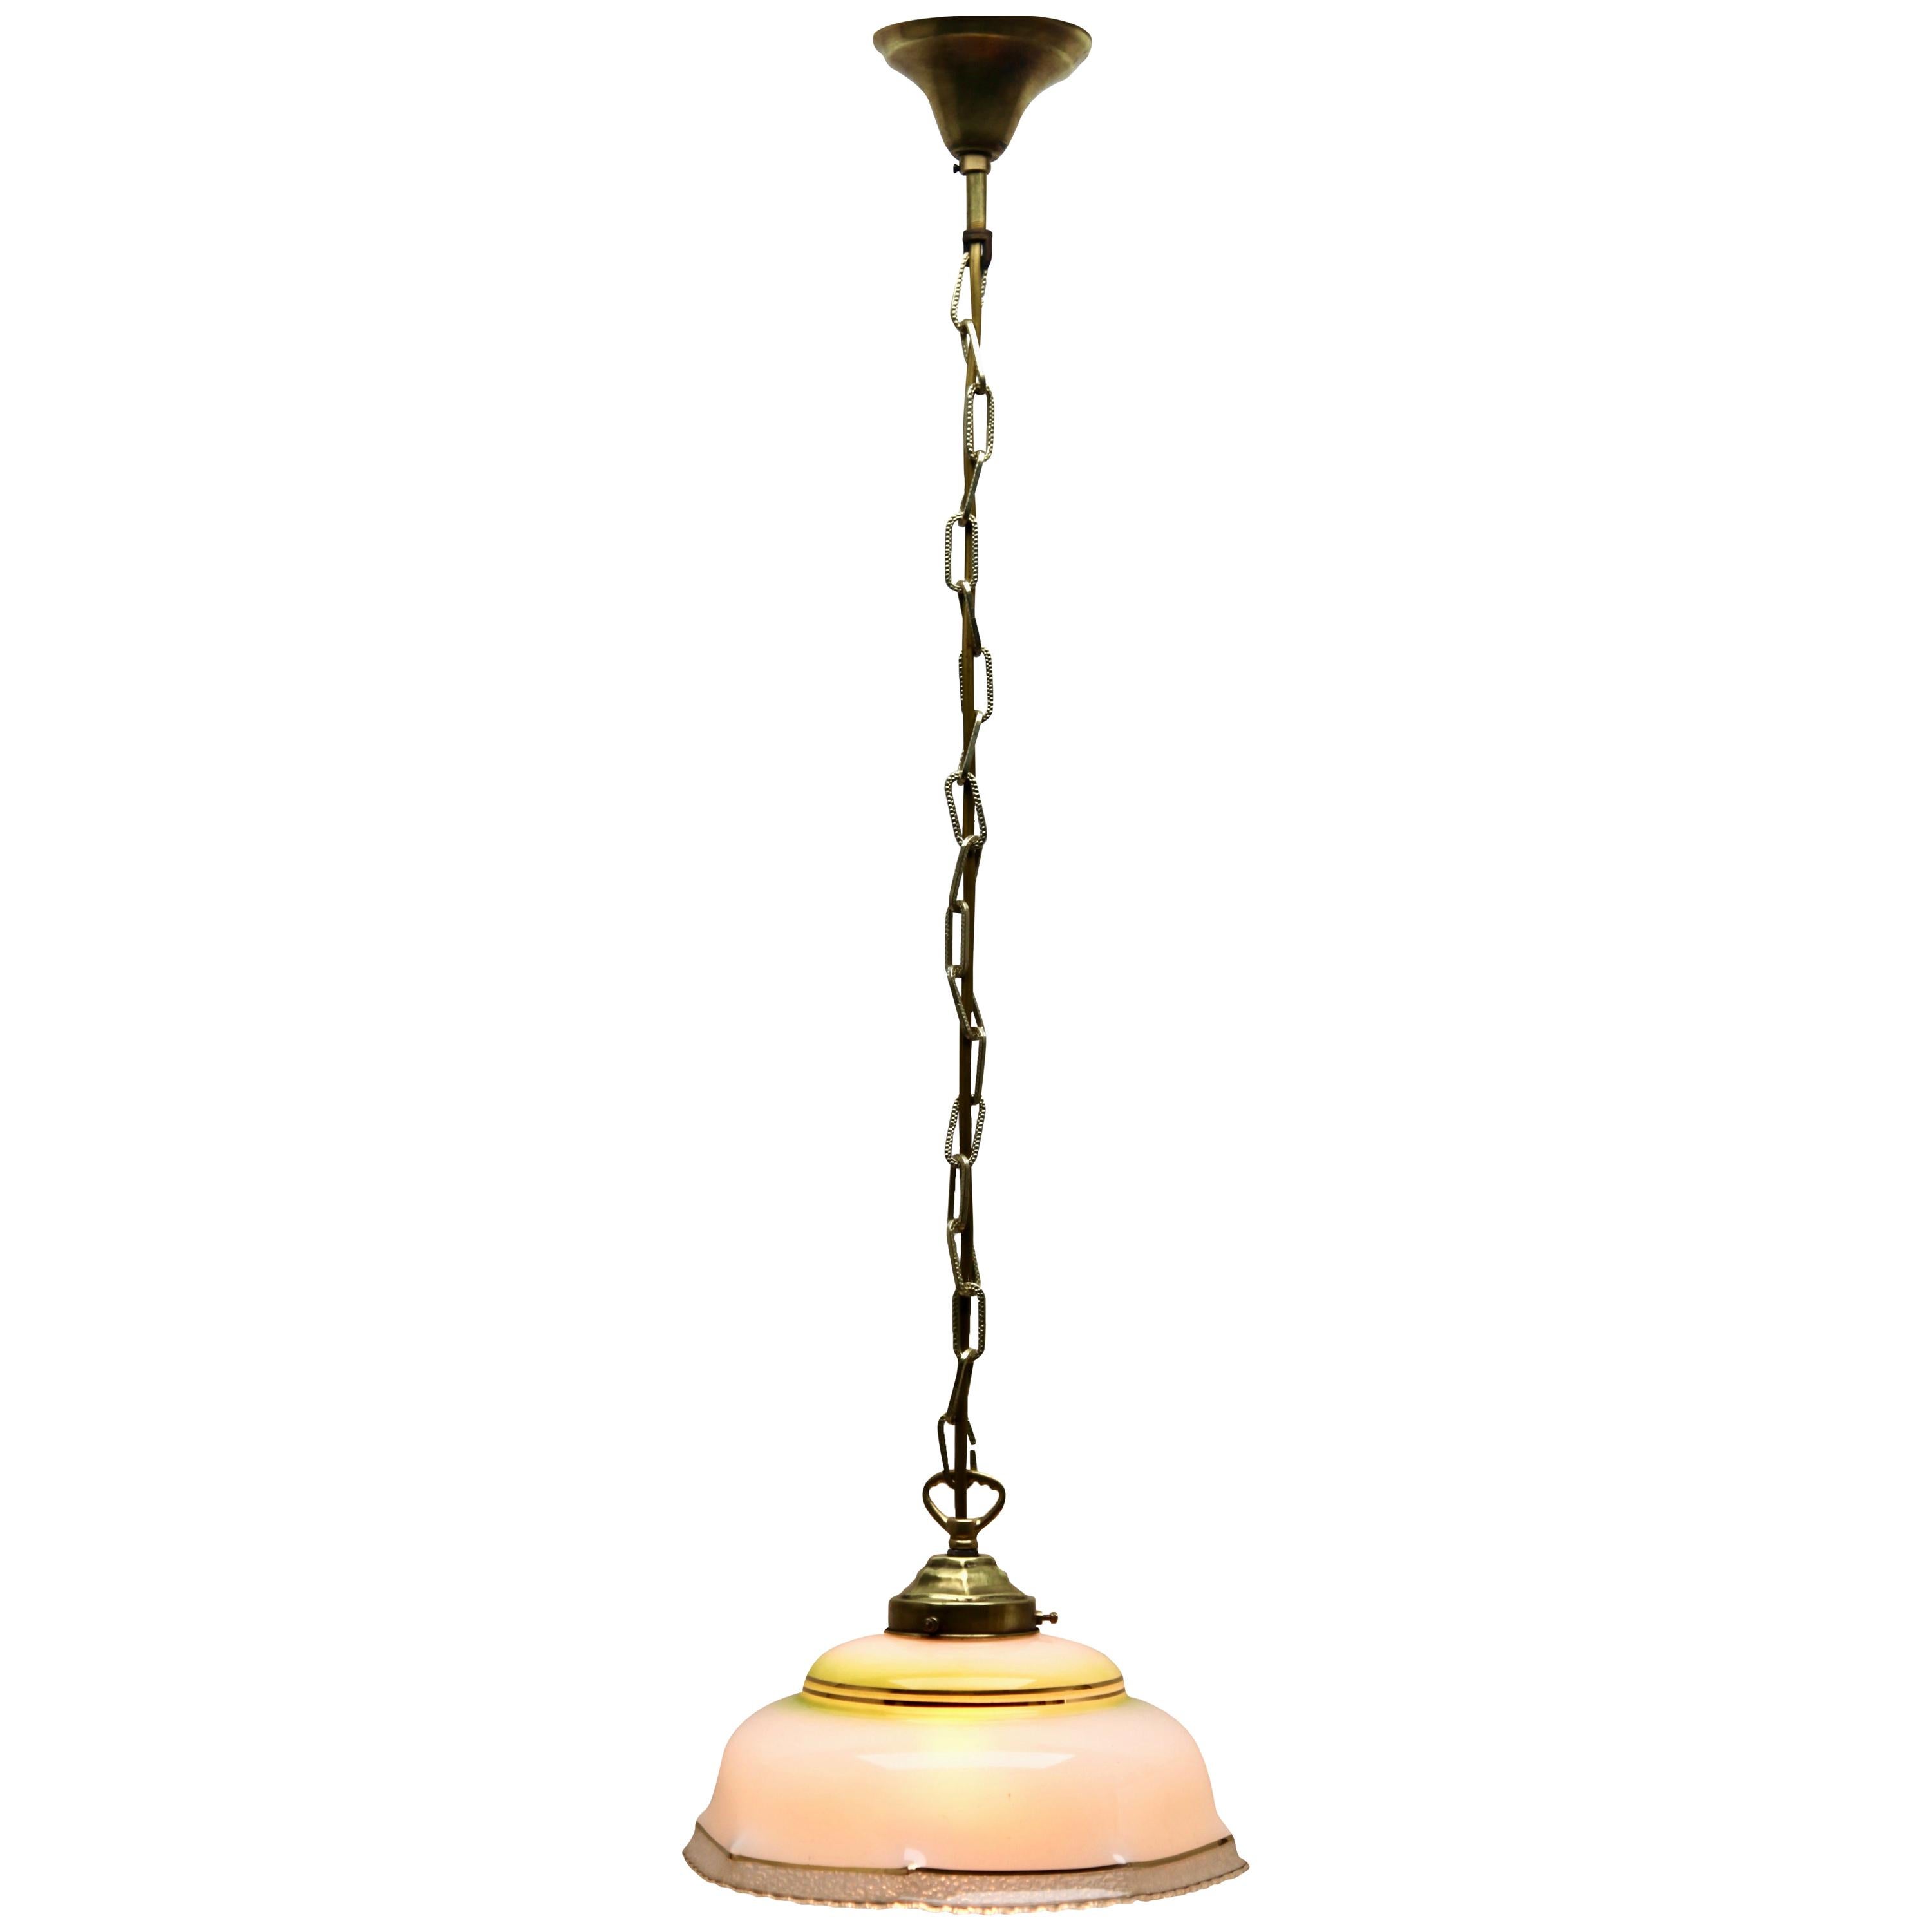 Art Nouveau Ceiling Lamp, Scailmont Belgium Glass Shade, 1930s